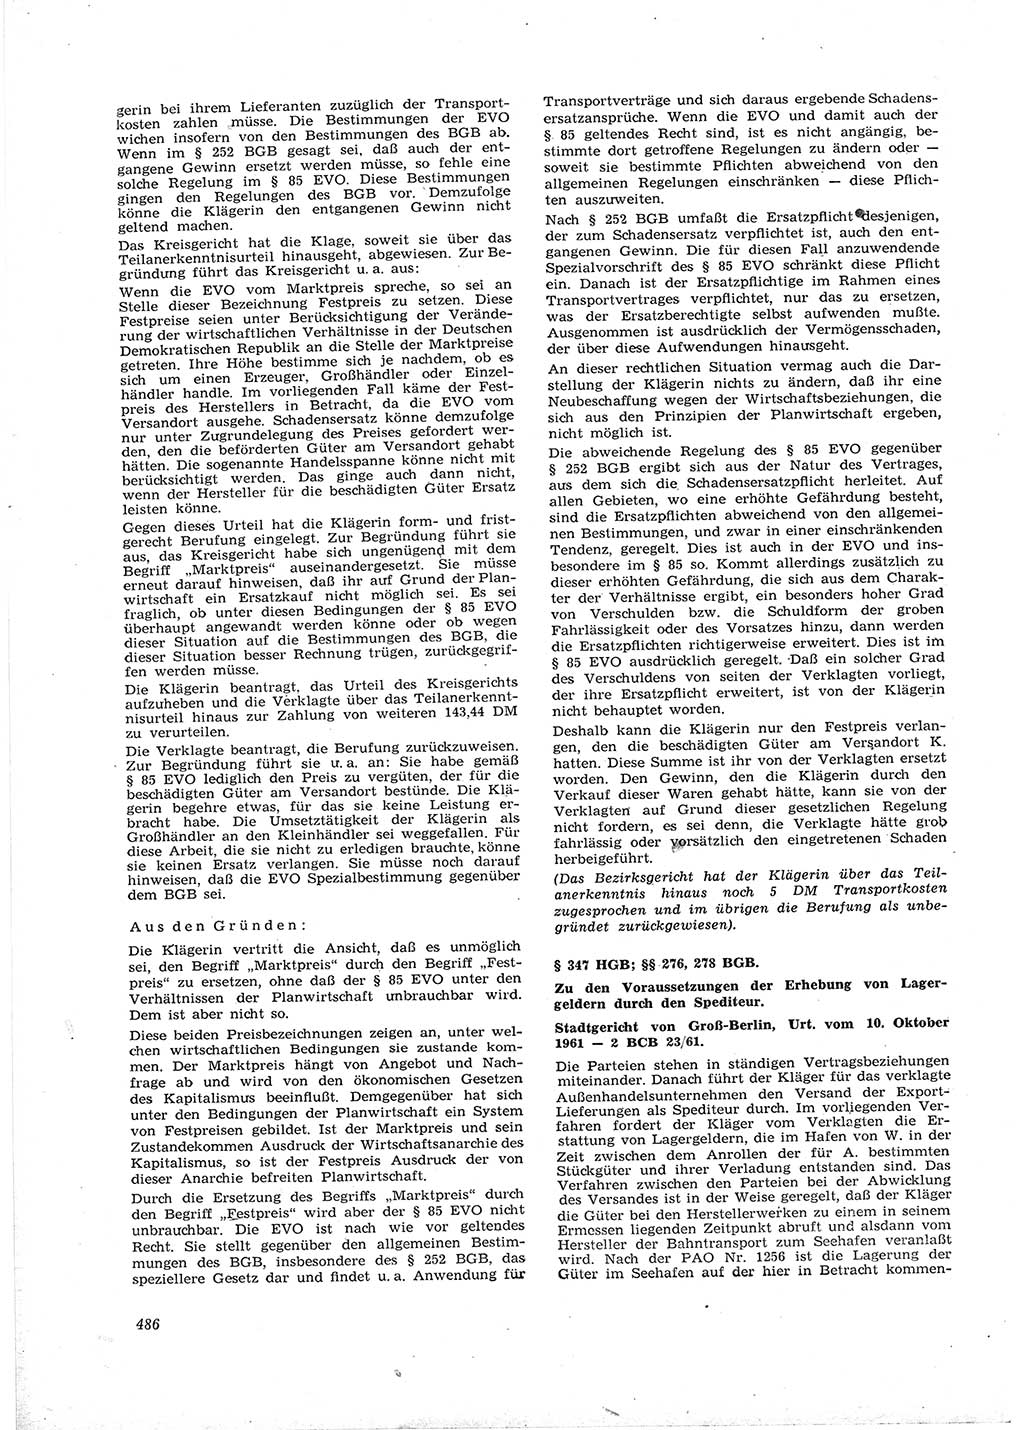 Neue Justiz (NJ), Zeitschrift für Recht und Rechtswissenschaft [Deutsche Demokratische Republik (DDR)], 16. Jahrgang 1962, Seite 486 (NJ DDR 1962, S. 486)